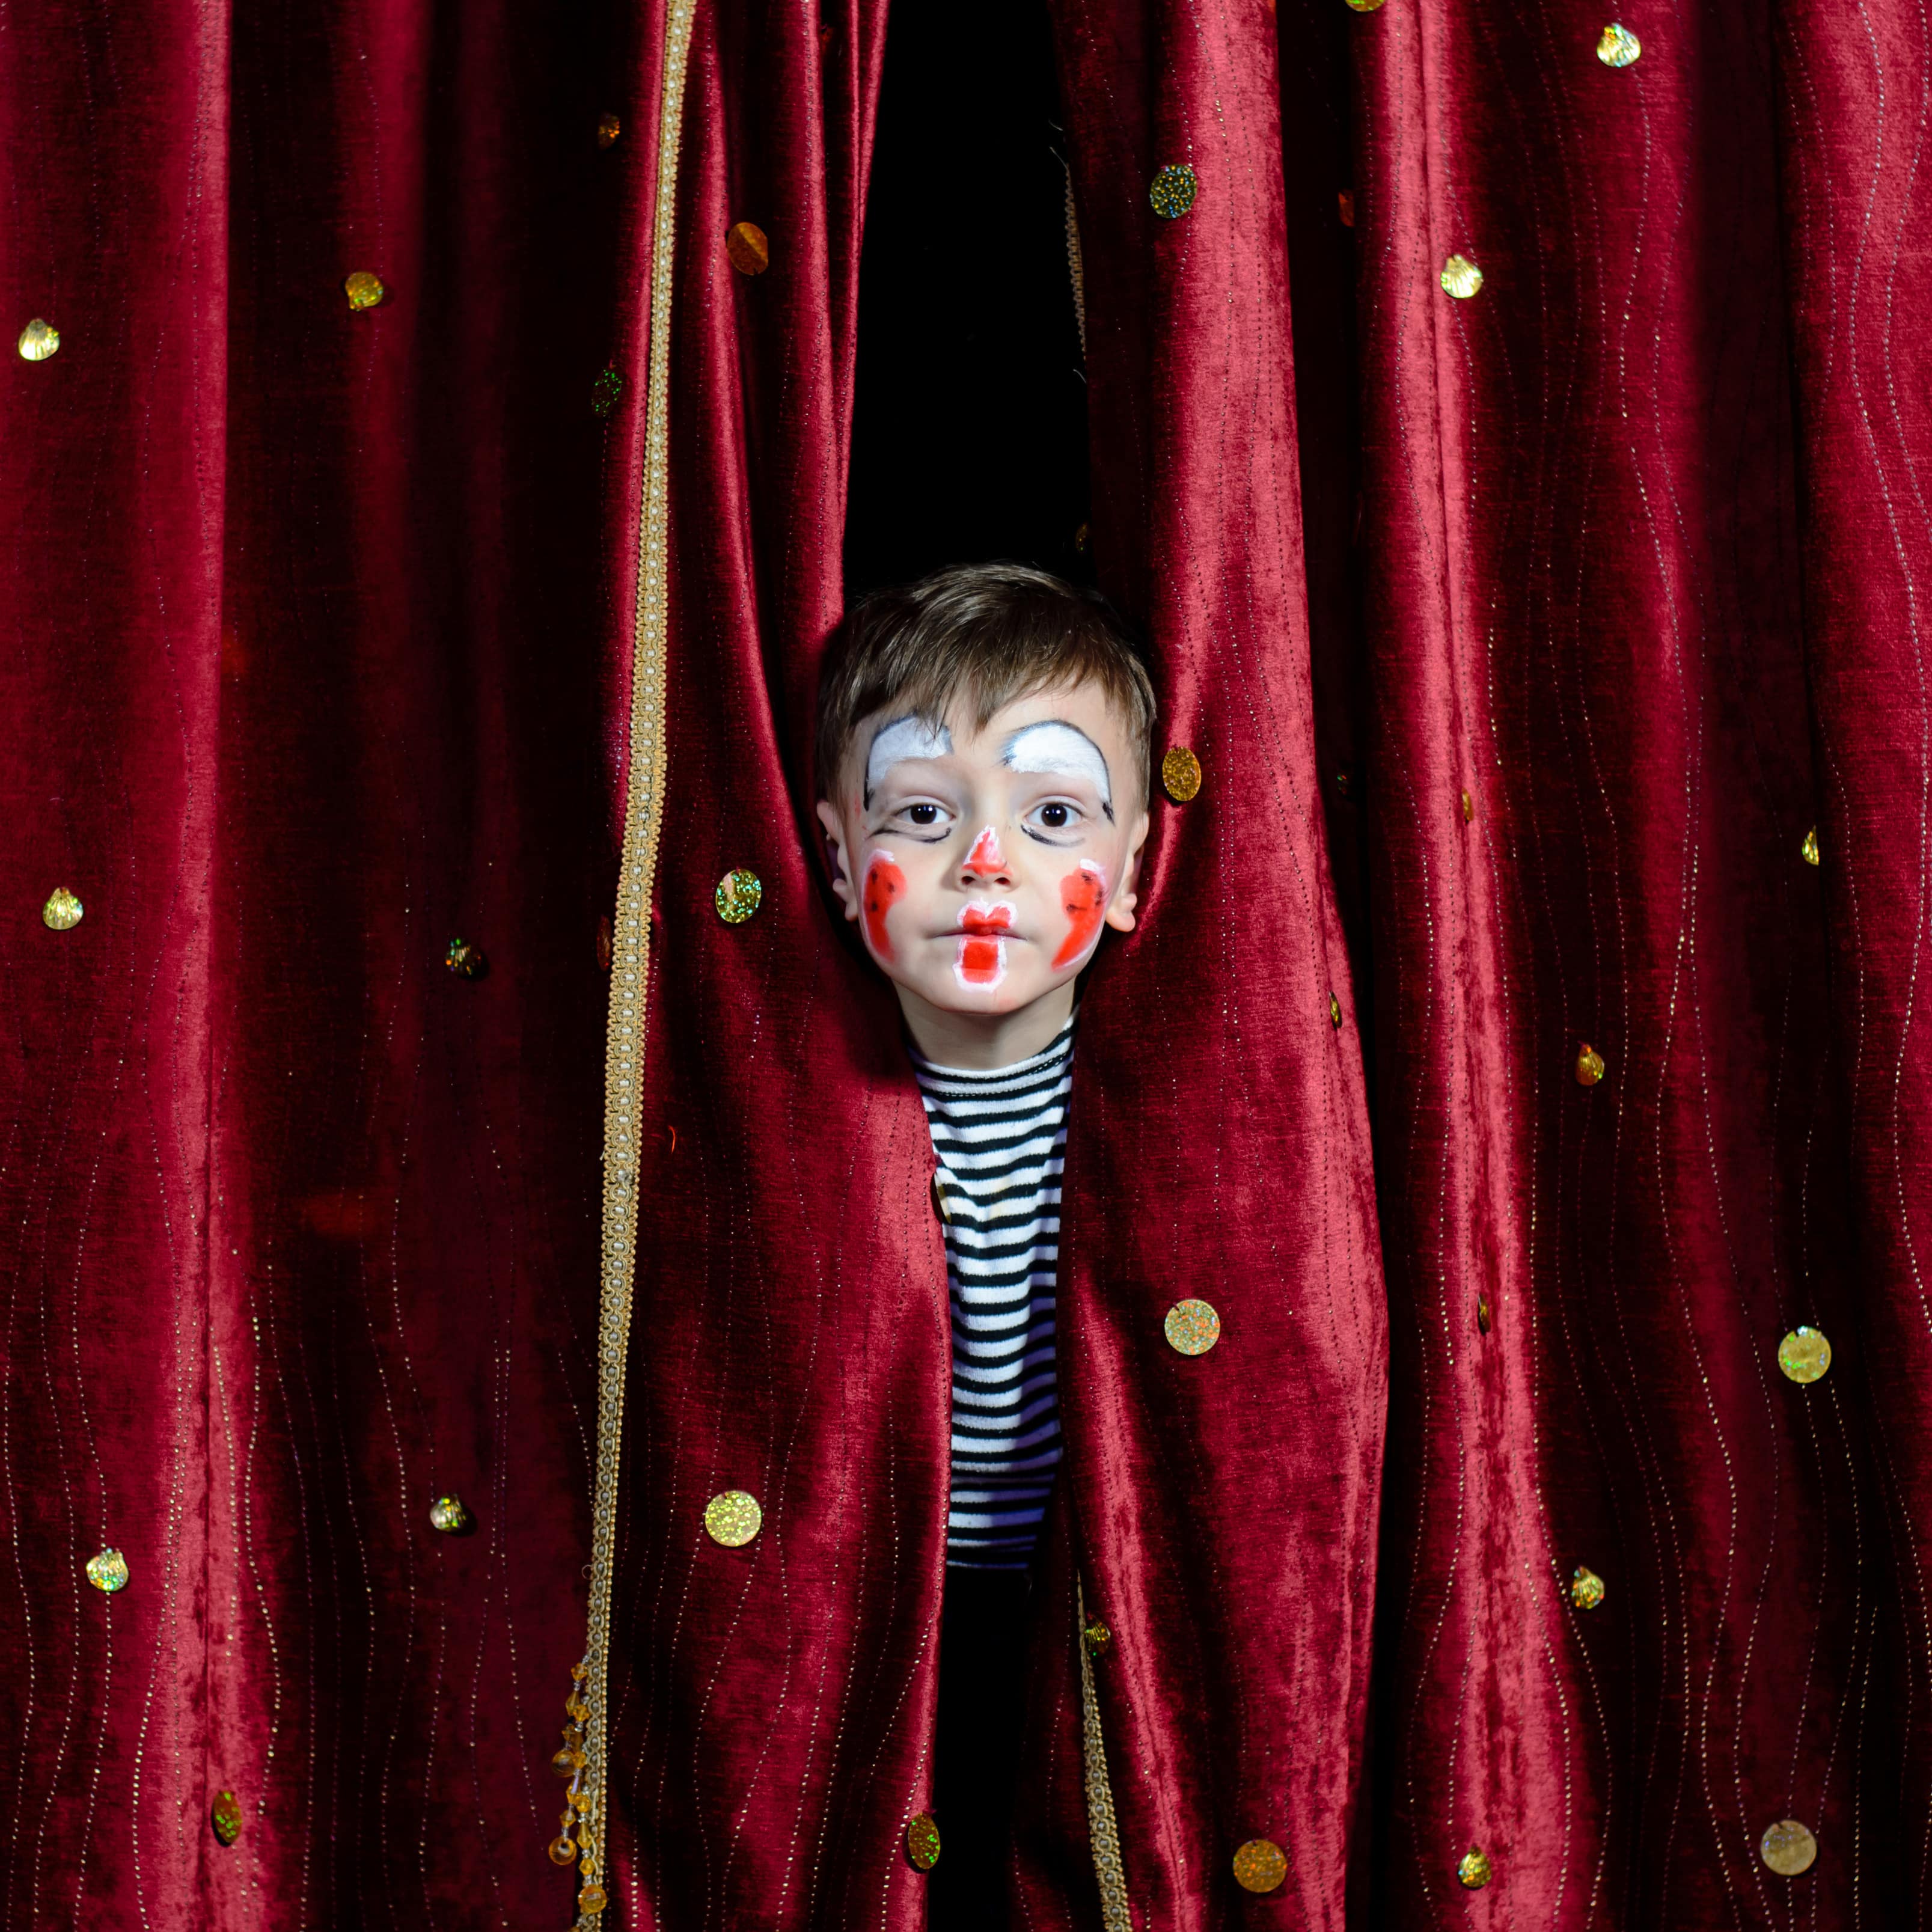 Ein Junge mit geschminktem Clownsgesicht steckt den Kopf durch einen dunkelroten Vorhang mit goldenen Verzierungen.